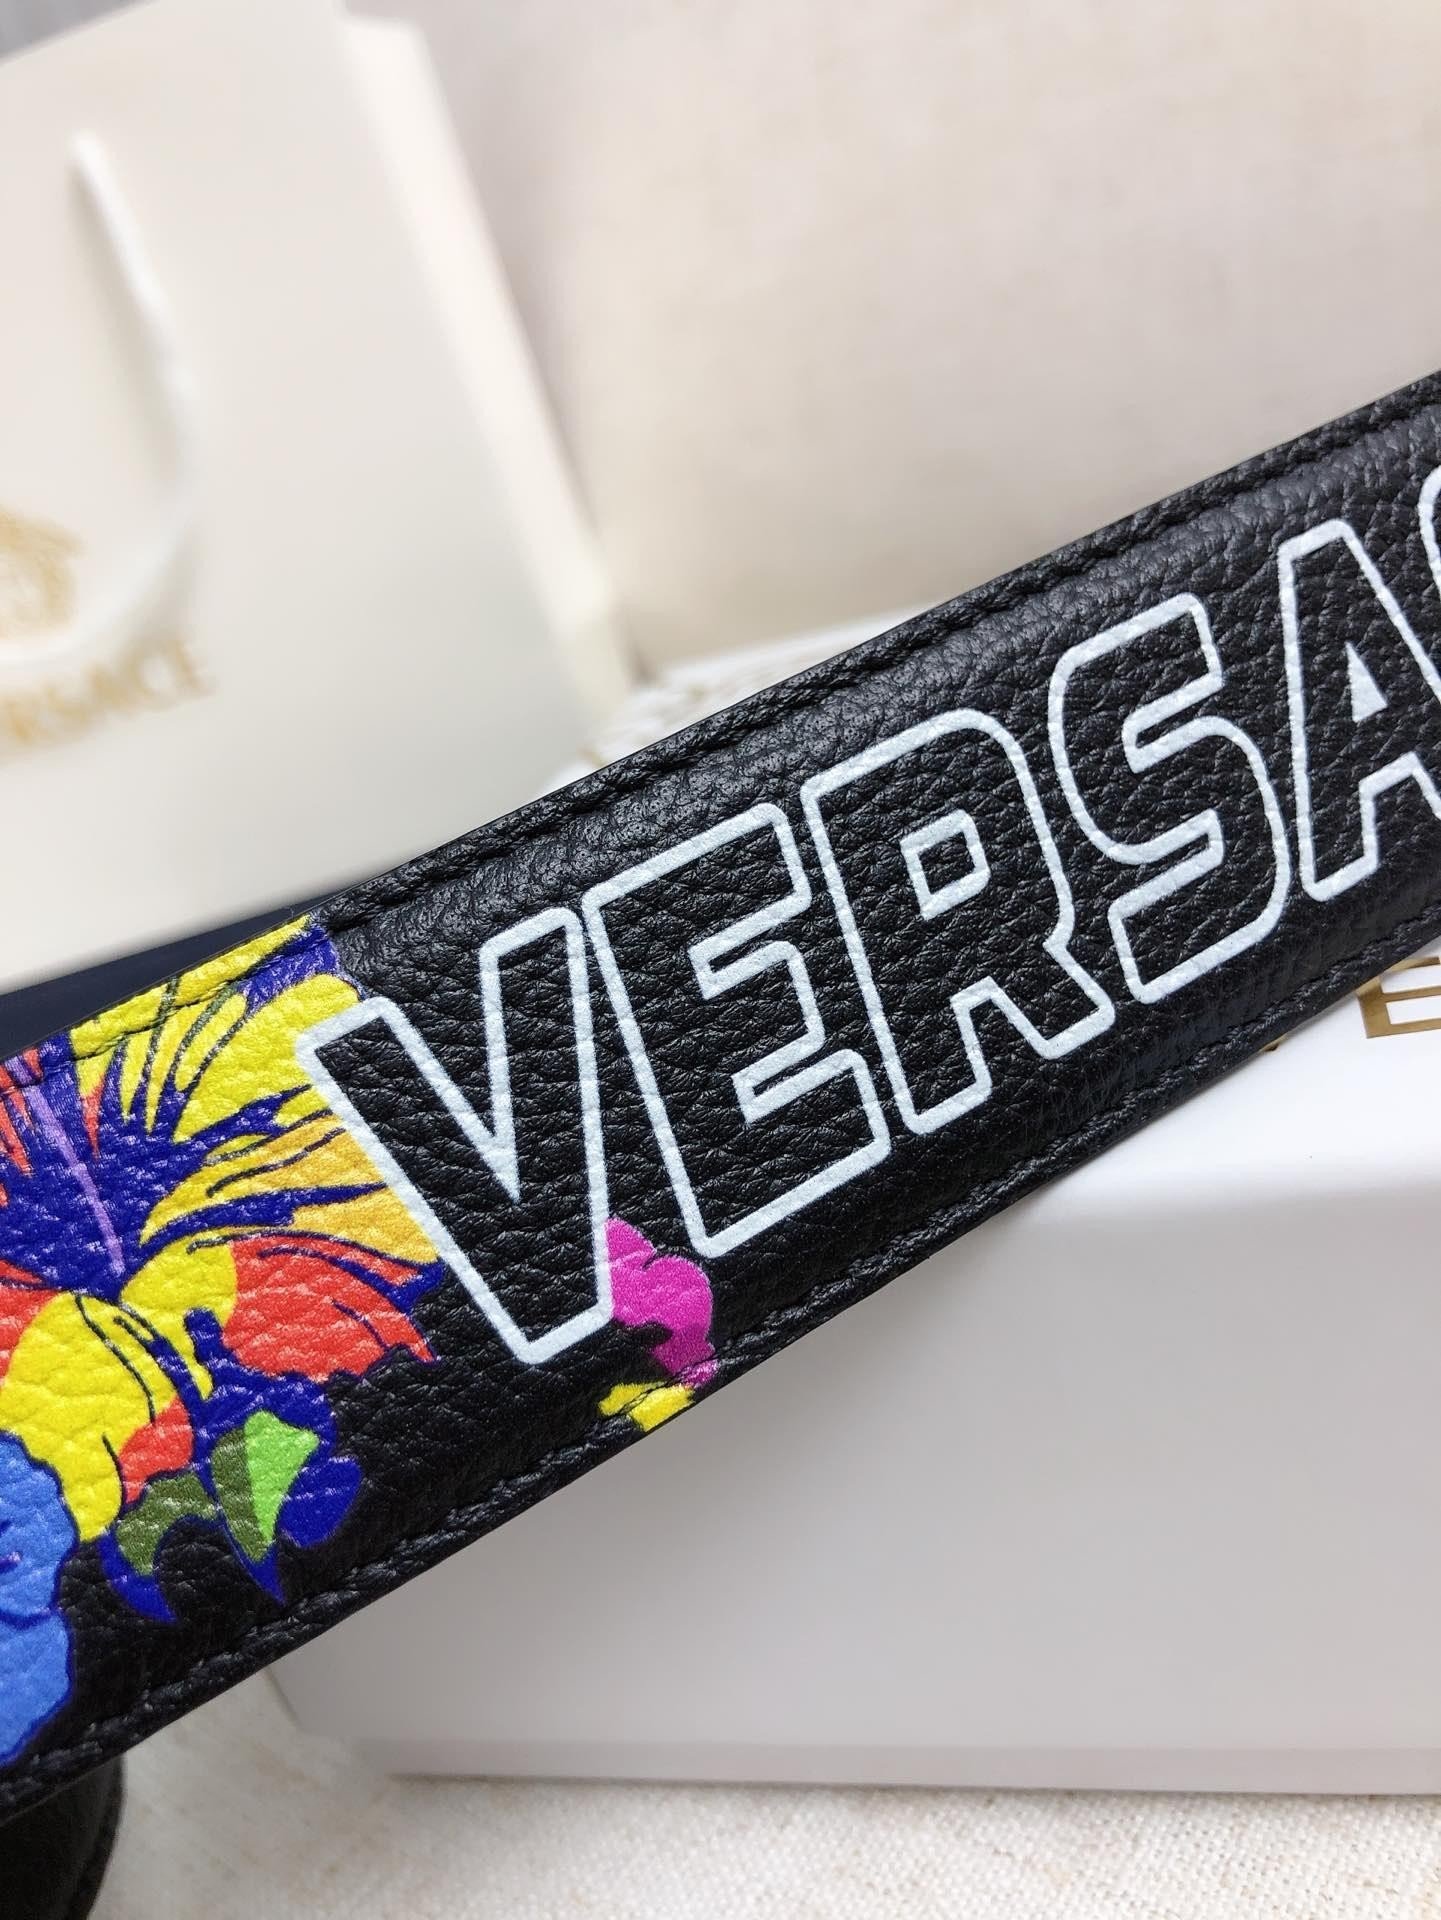 Thắt Lưng Versace Họa Tiết Hoa 3D Siêu Cấp Mặt Bạc Size 3.8cm